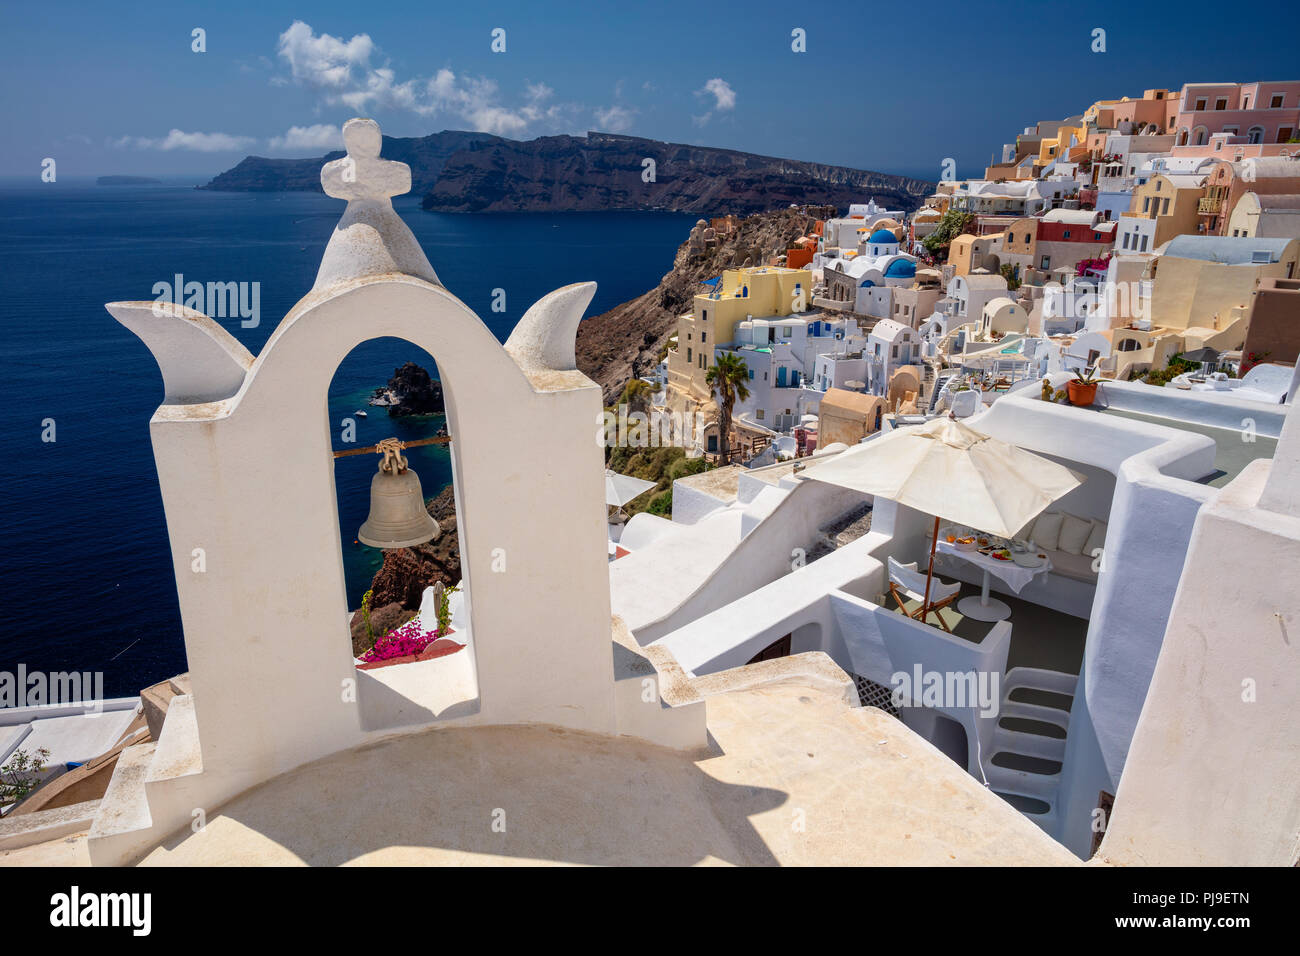 Image du célèbre cyclades Oia village situé à l'île de Santorin, sud de la mer Egée, en Grèce. Banque D'Images